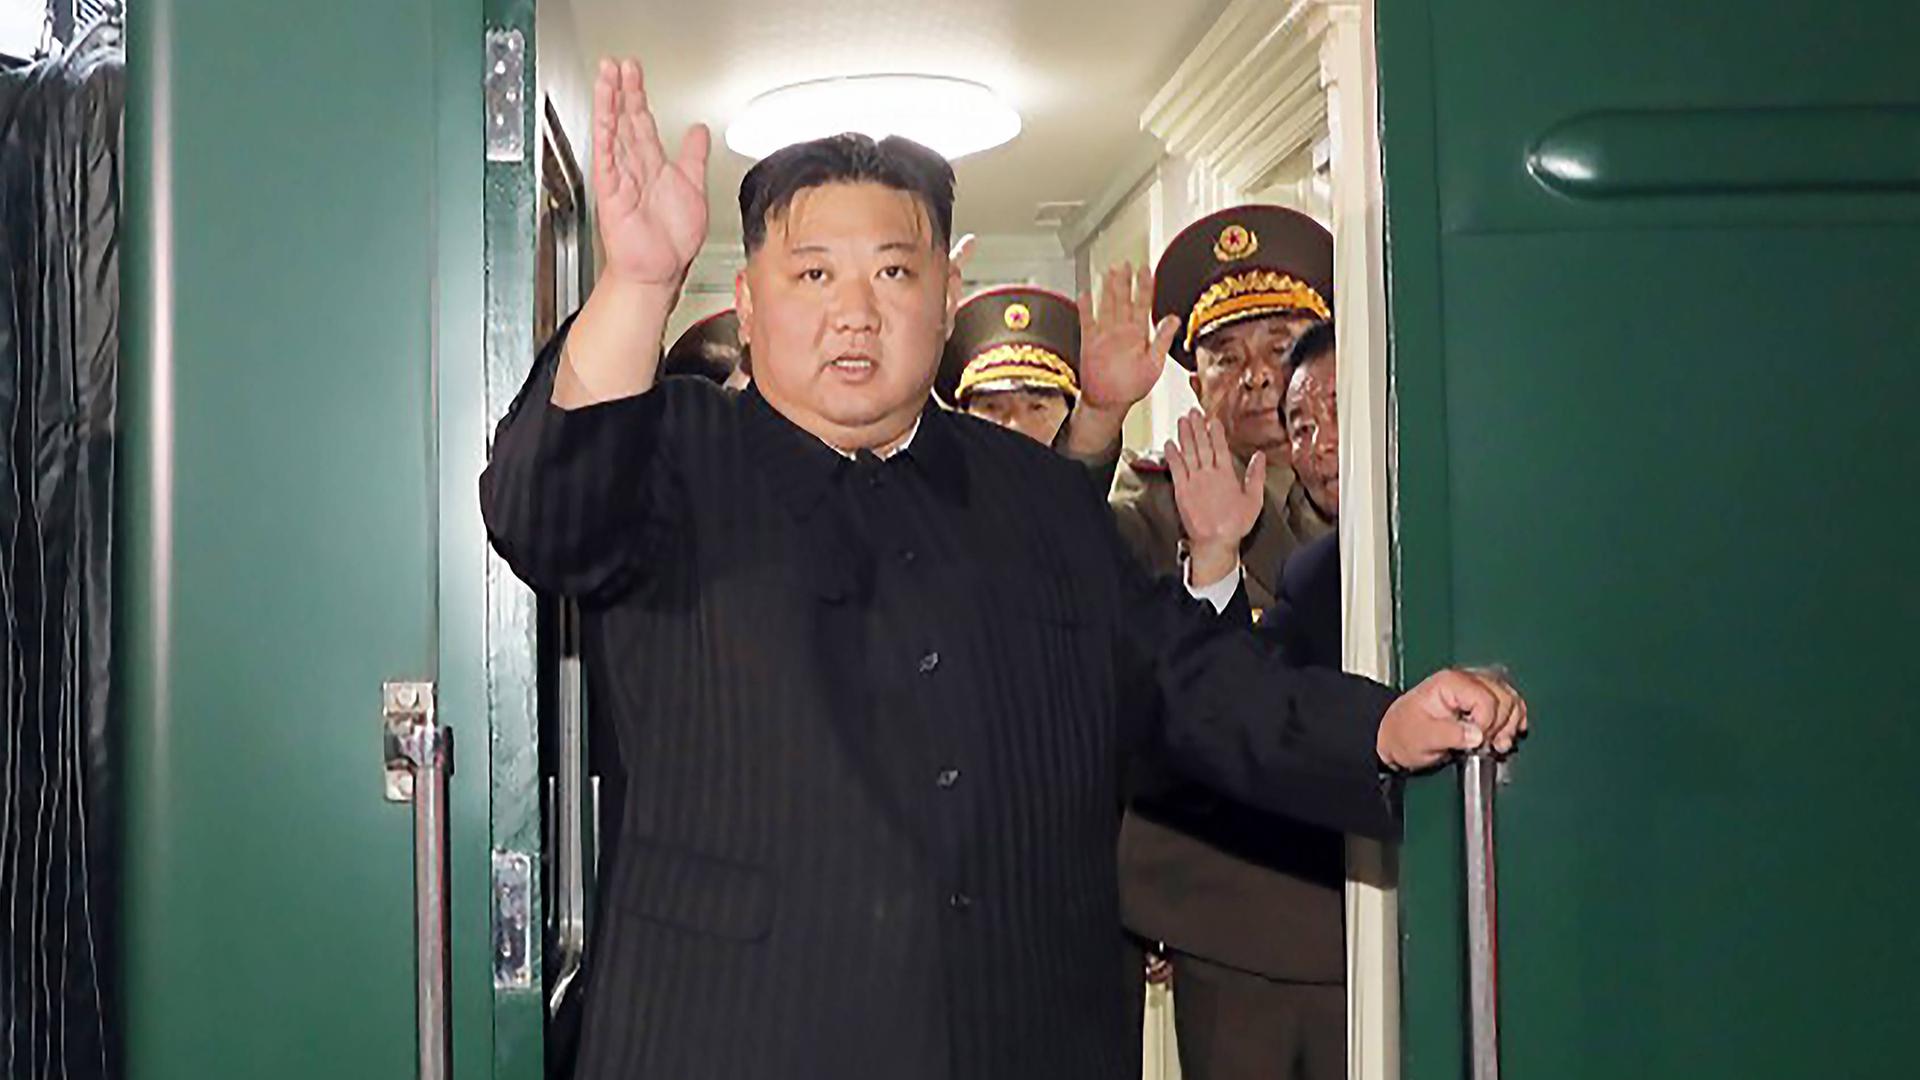 Kim Jong Un steht in schwarzem Anzug winkend in einer Zugtür.
